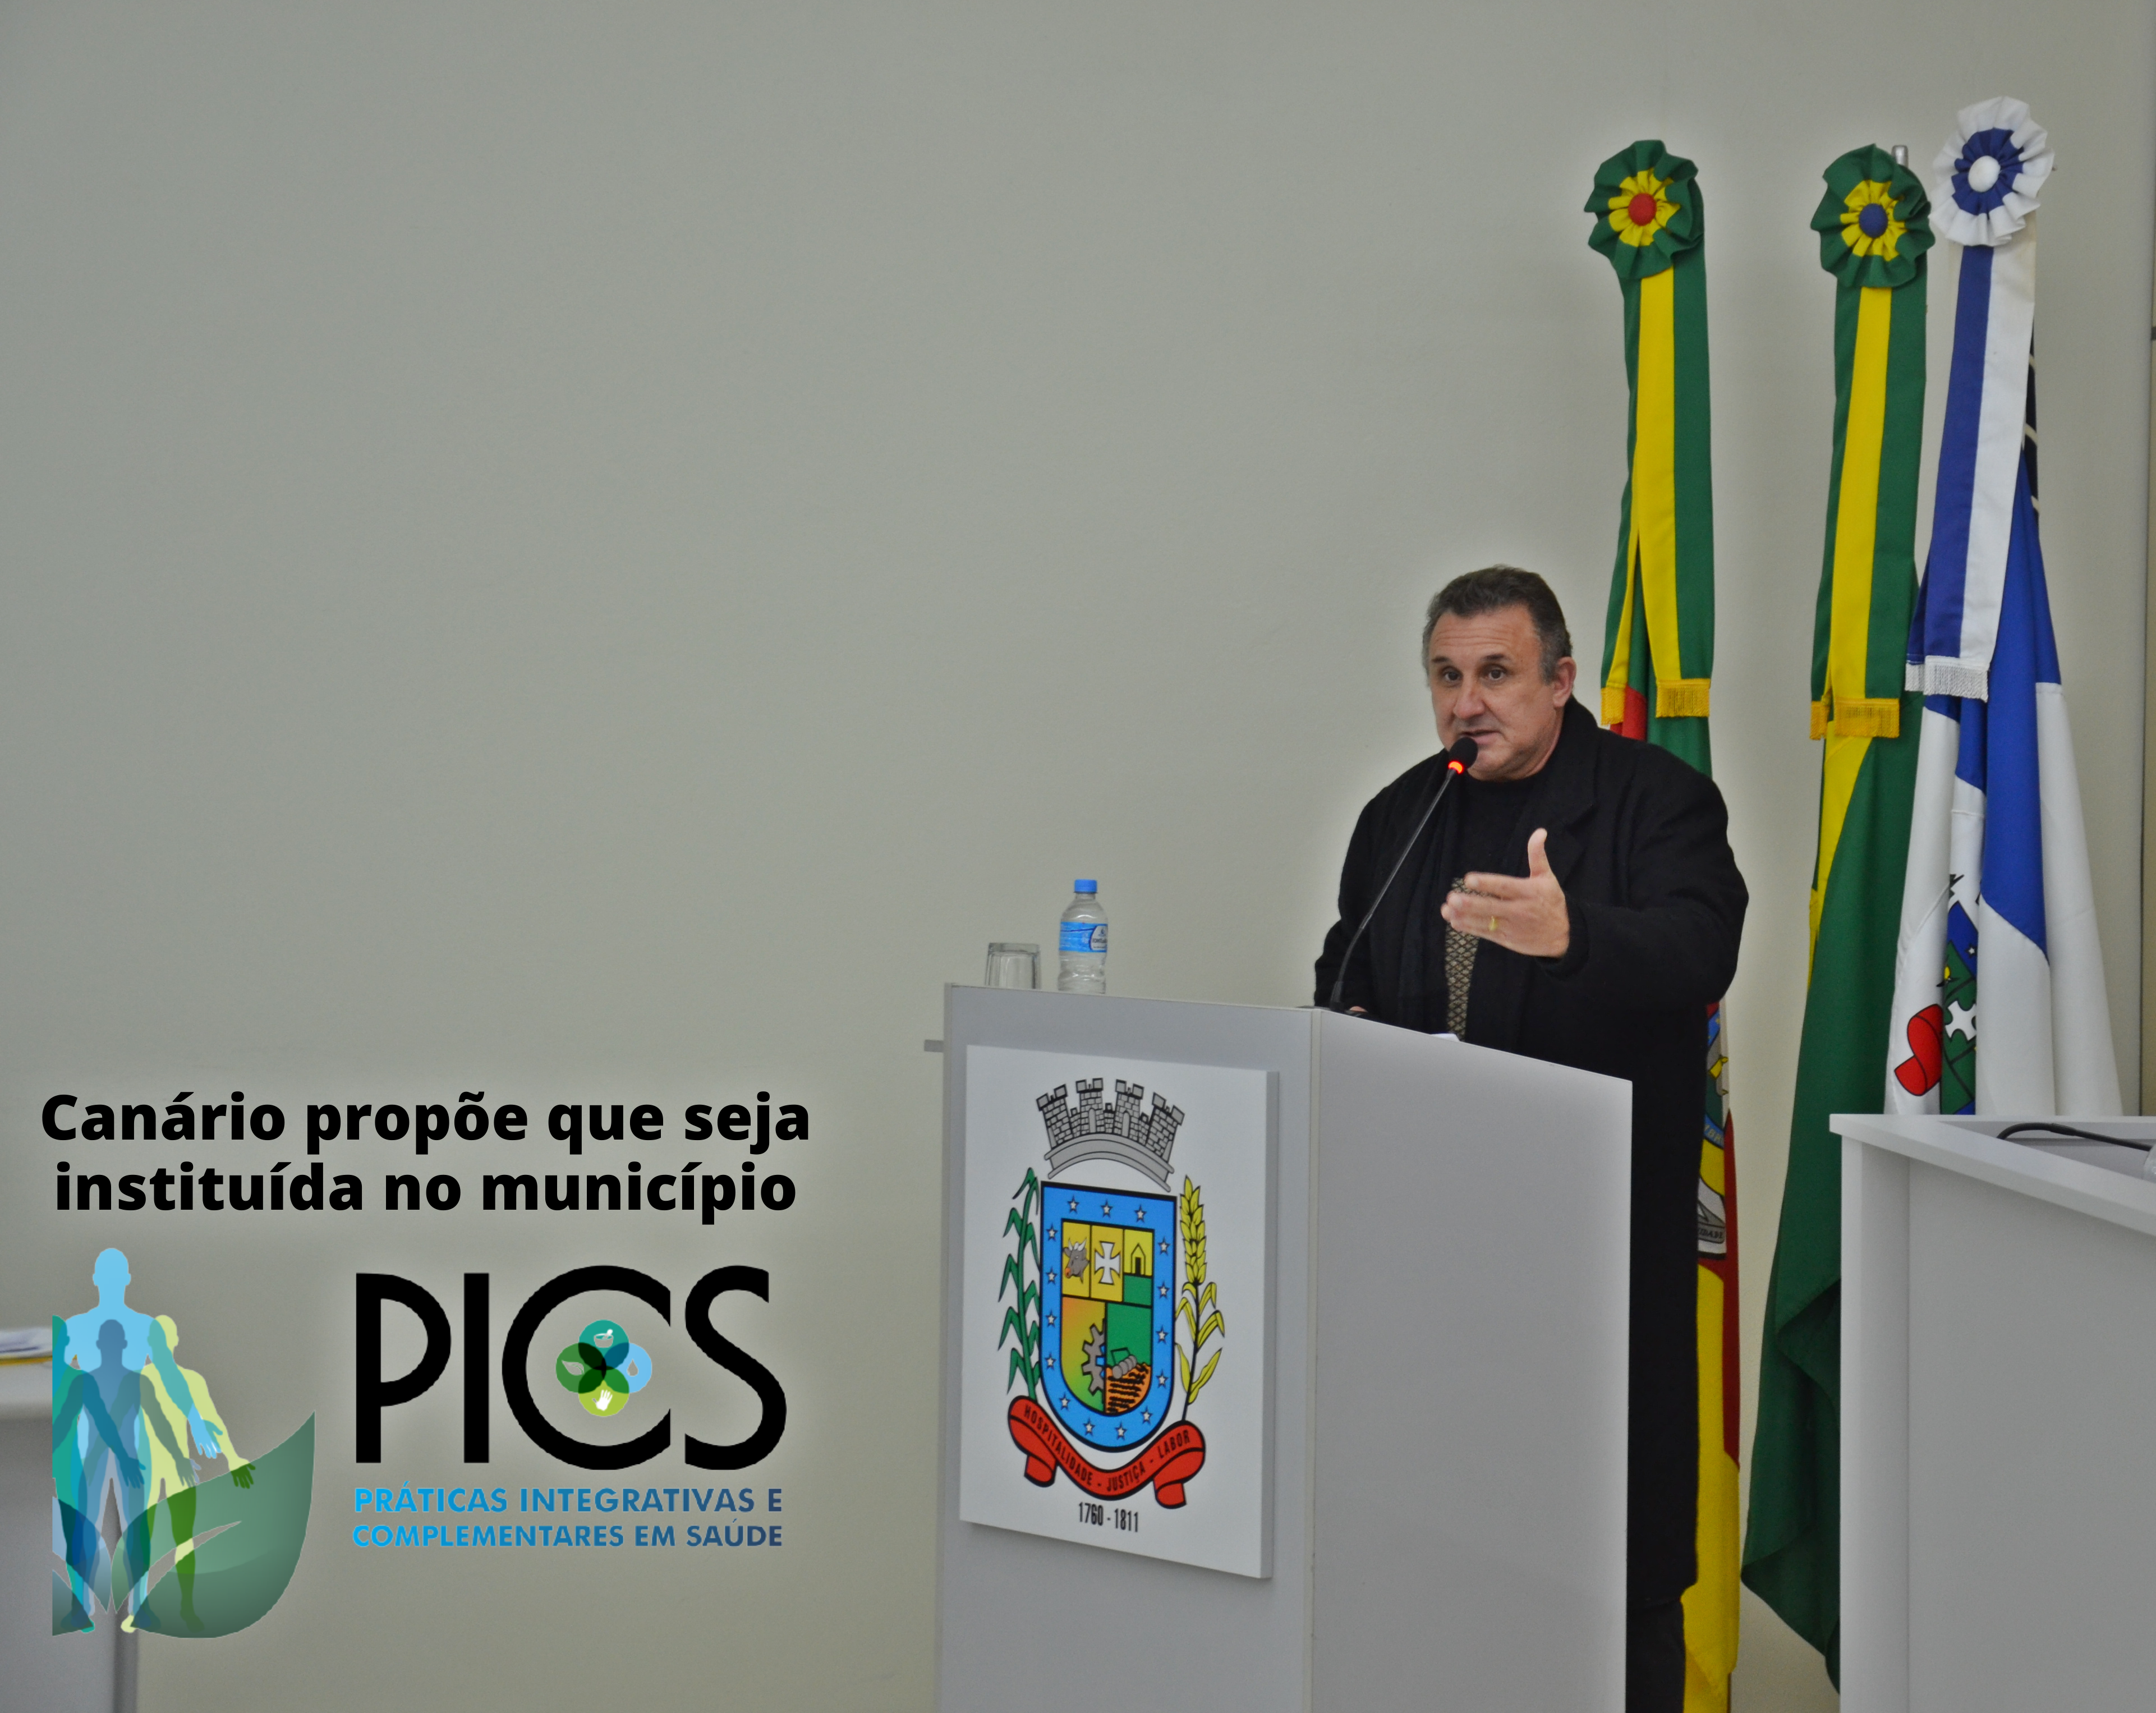 Canário propõe que o programa de Práticas Integrativas e Complementares seja instituída no município